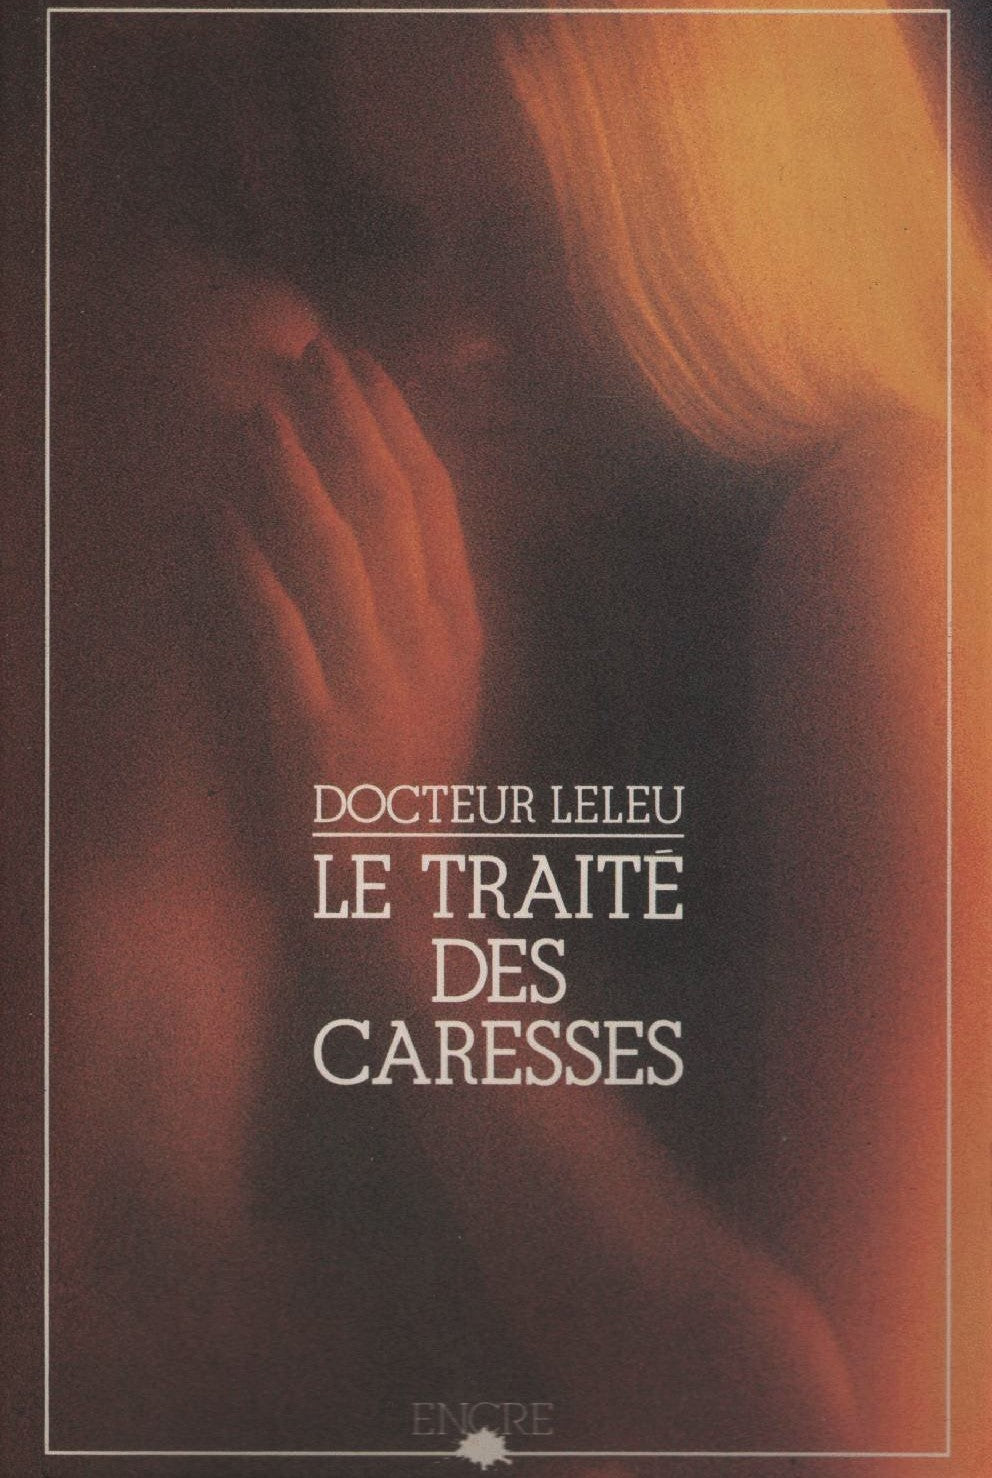 Livre ISBN 2864181509 Le traité des caresses (Docteur Leleu)